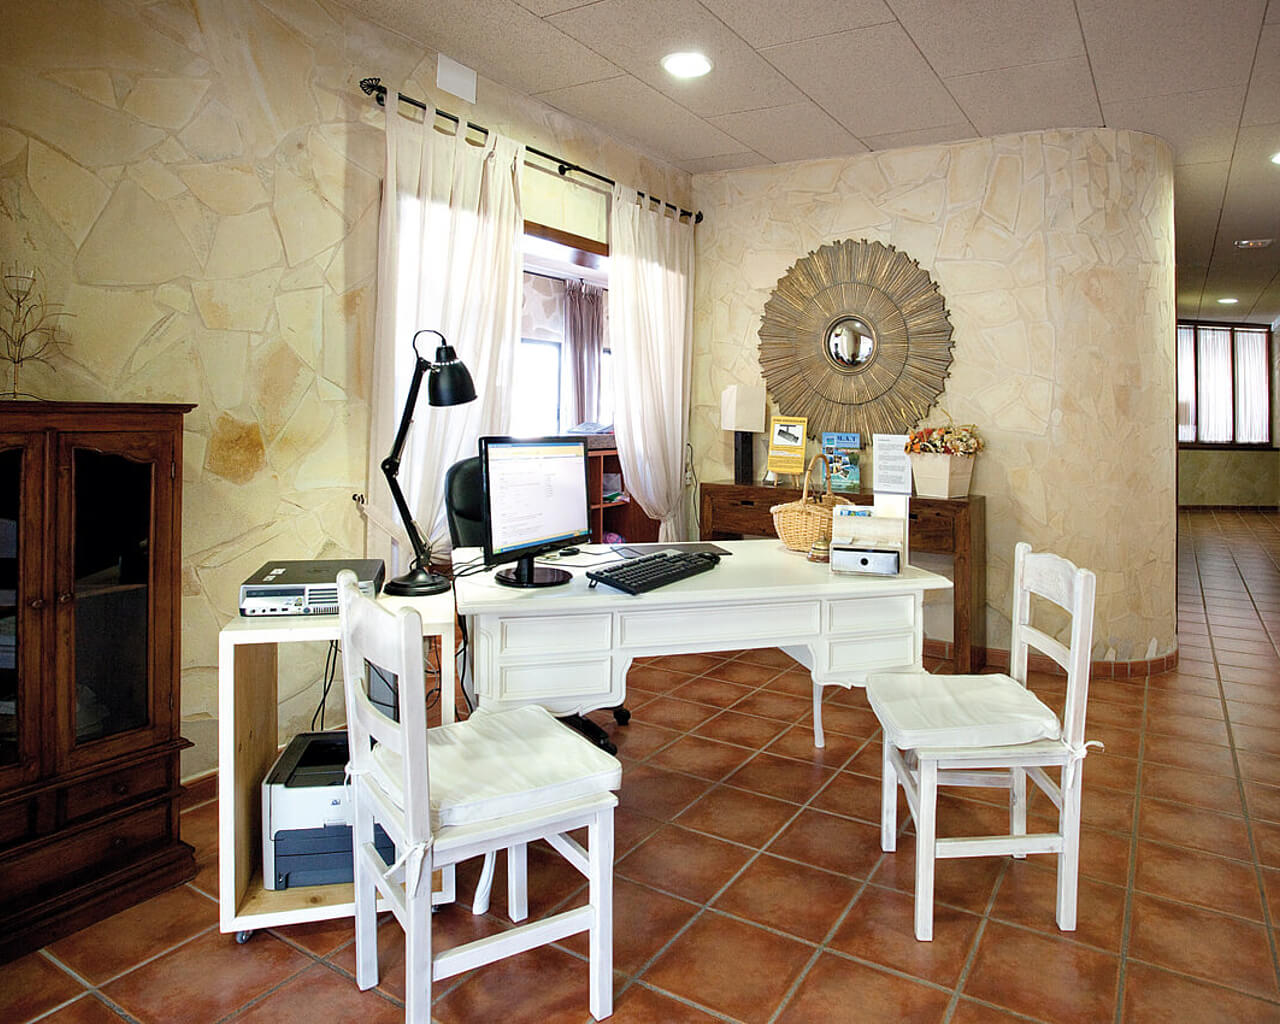 Entre Pinos Hôtel, Es Calo, Formentera